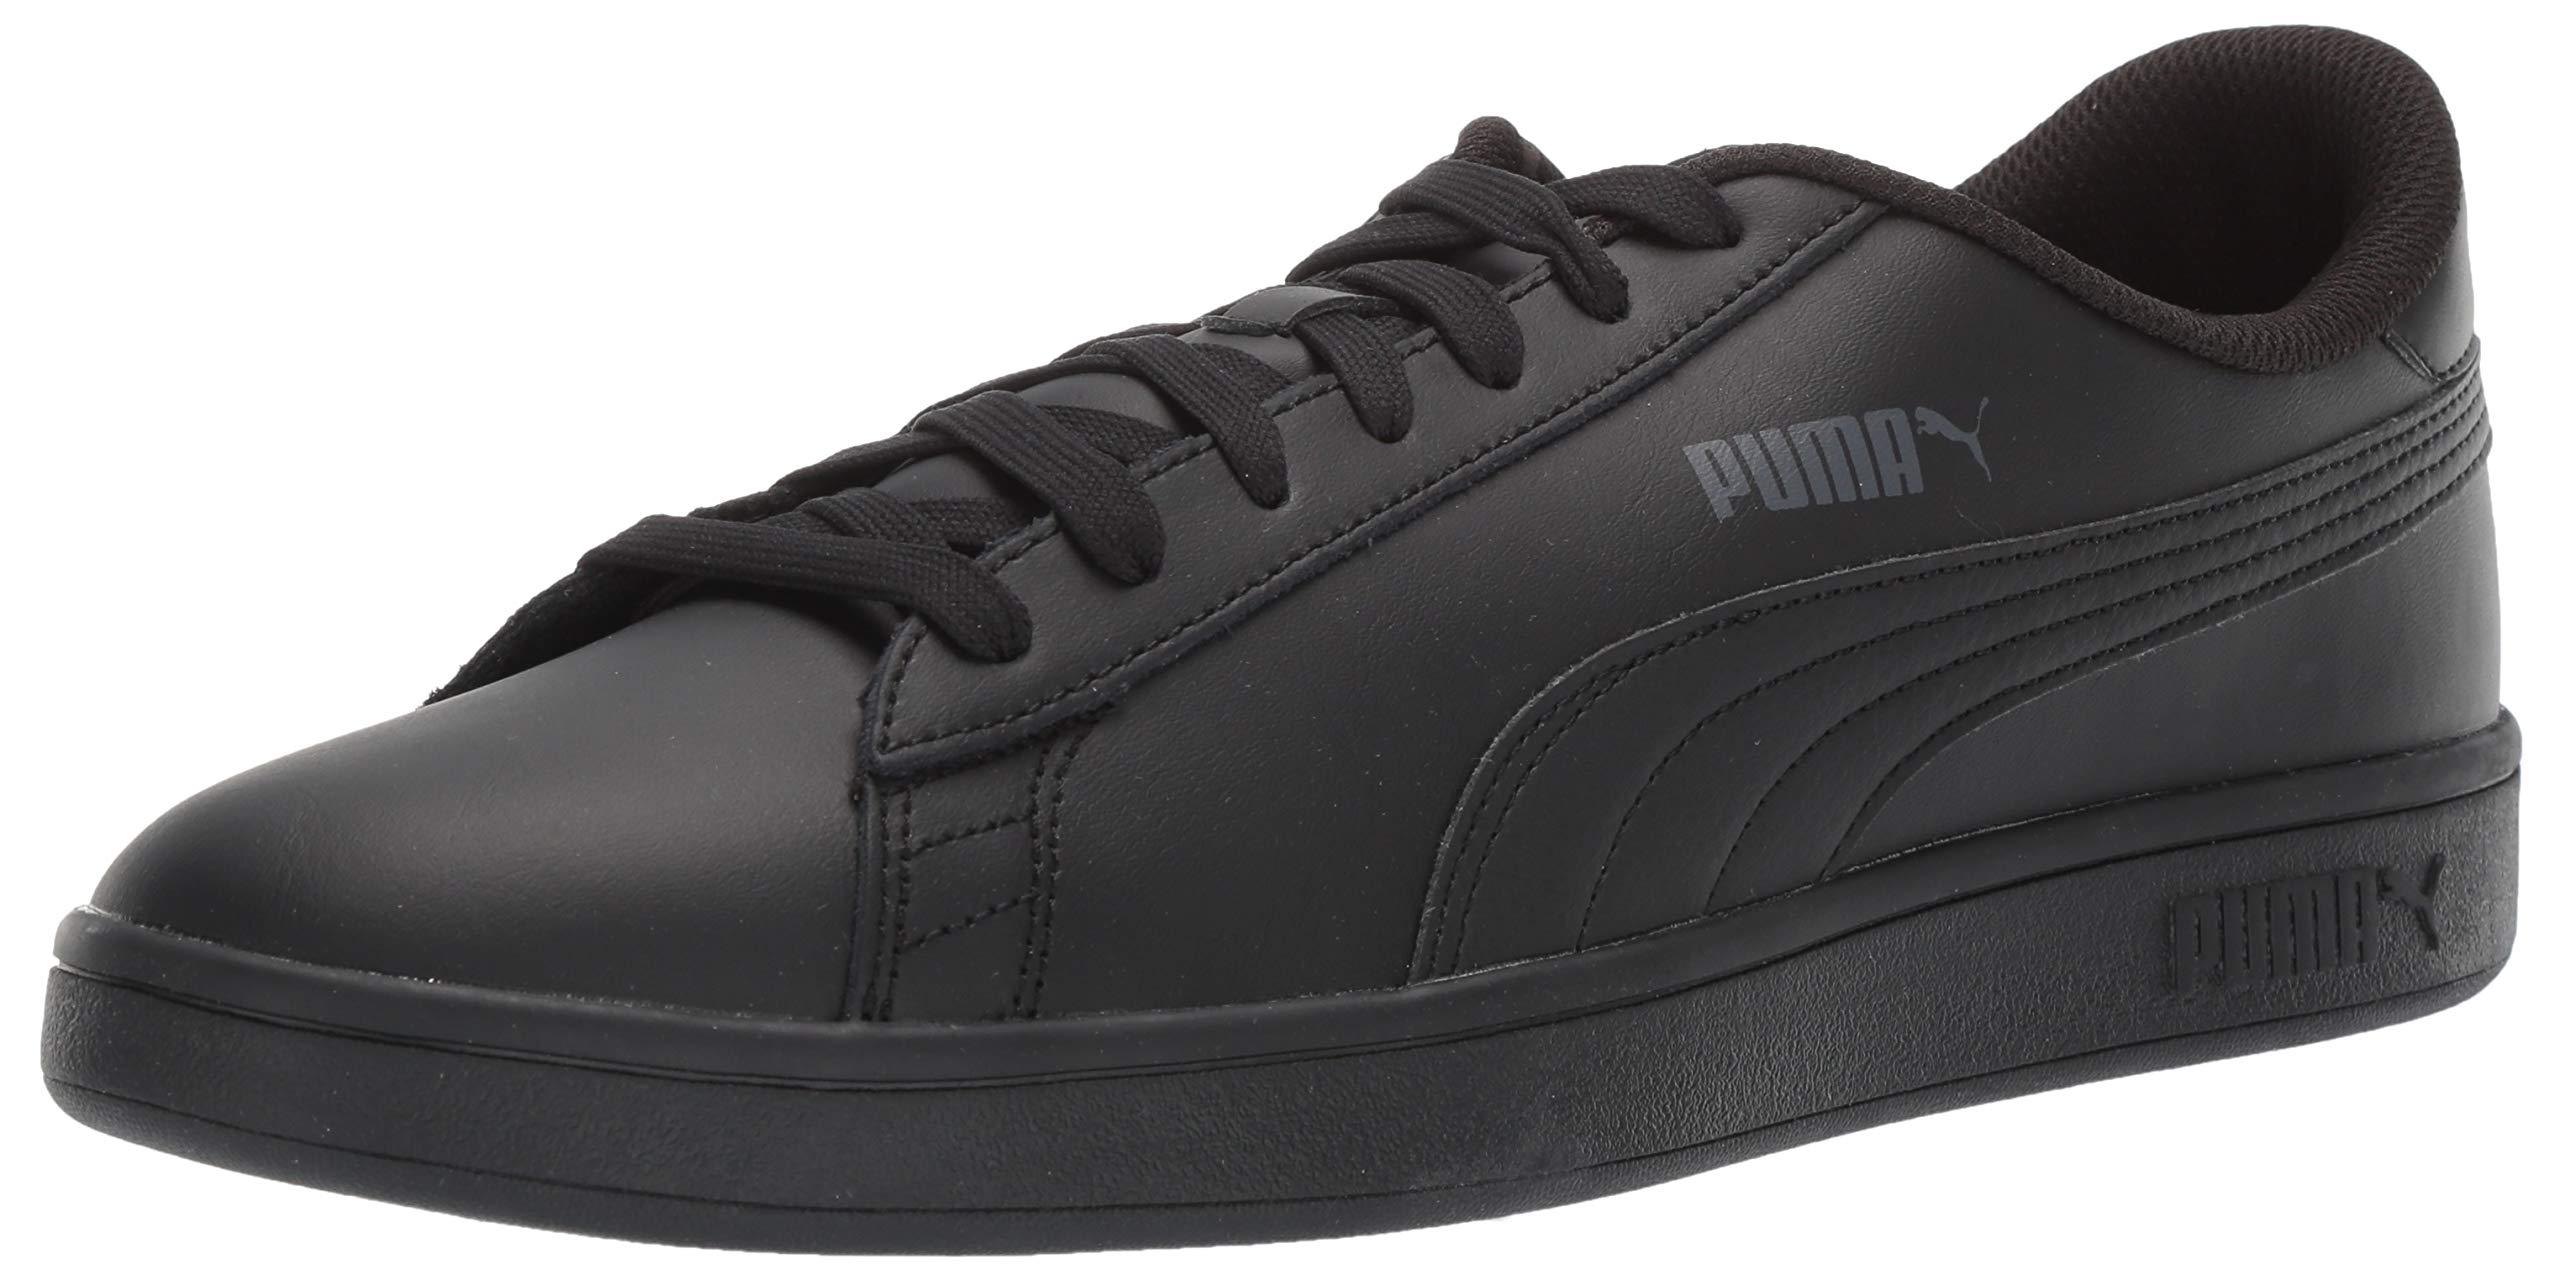 PUMA Leather Smash V2 Sneaker in Black/White (Black) for Men - Save 68% ...